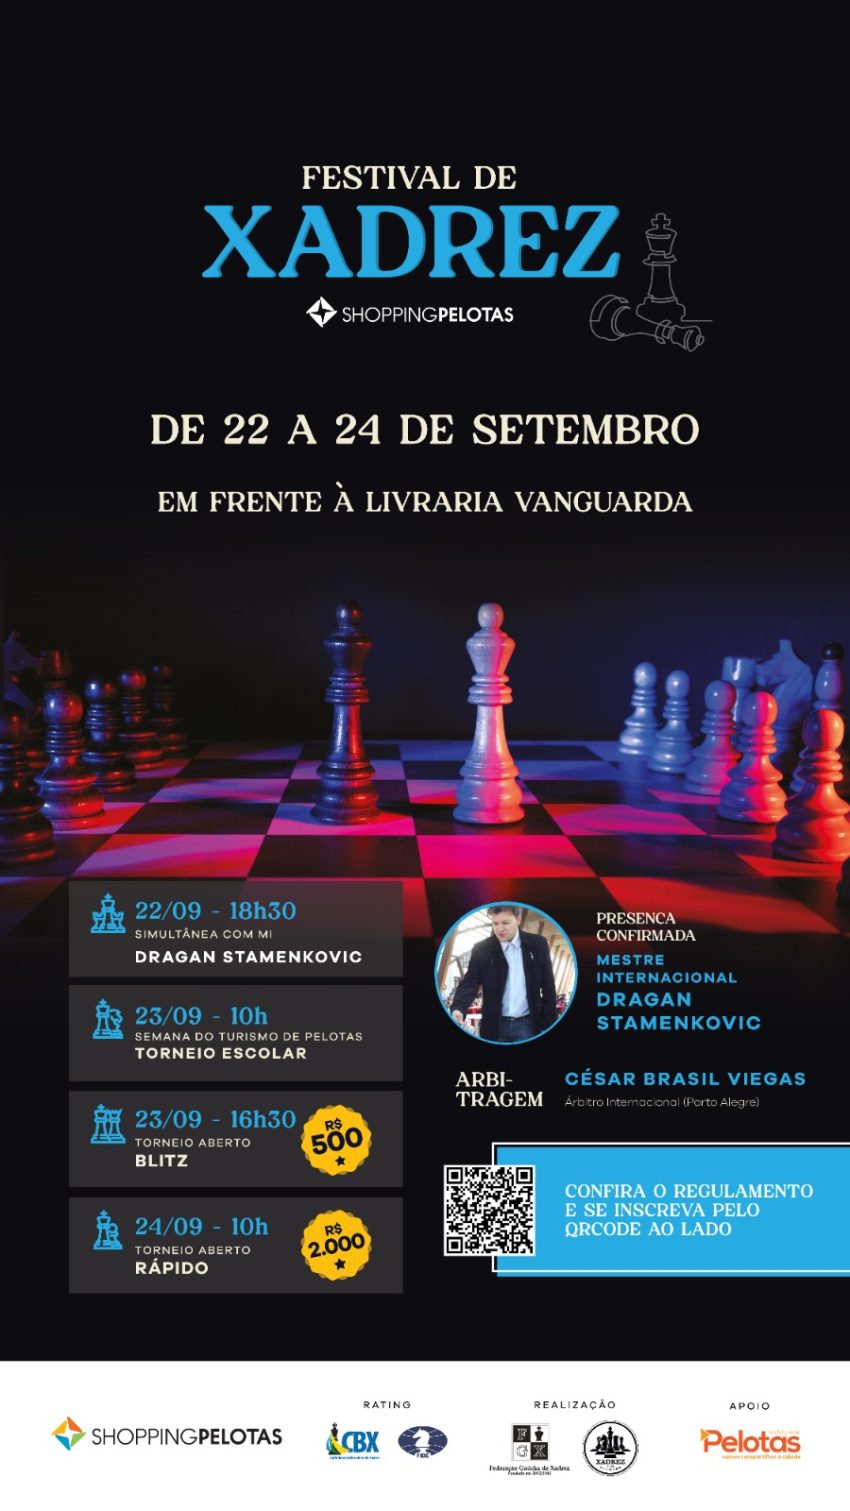 Federação Moçambicana de Xadrez